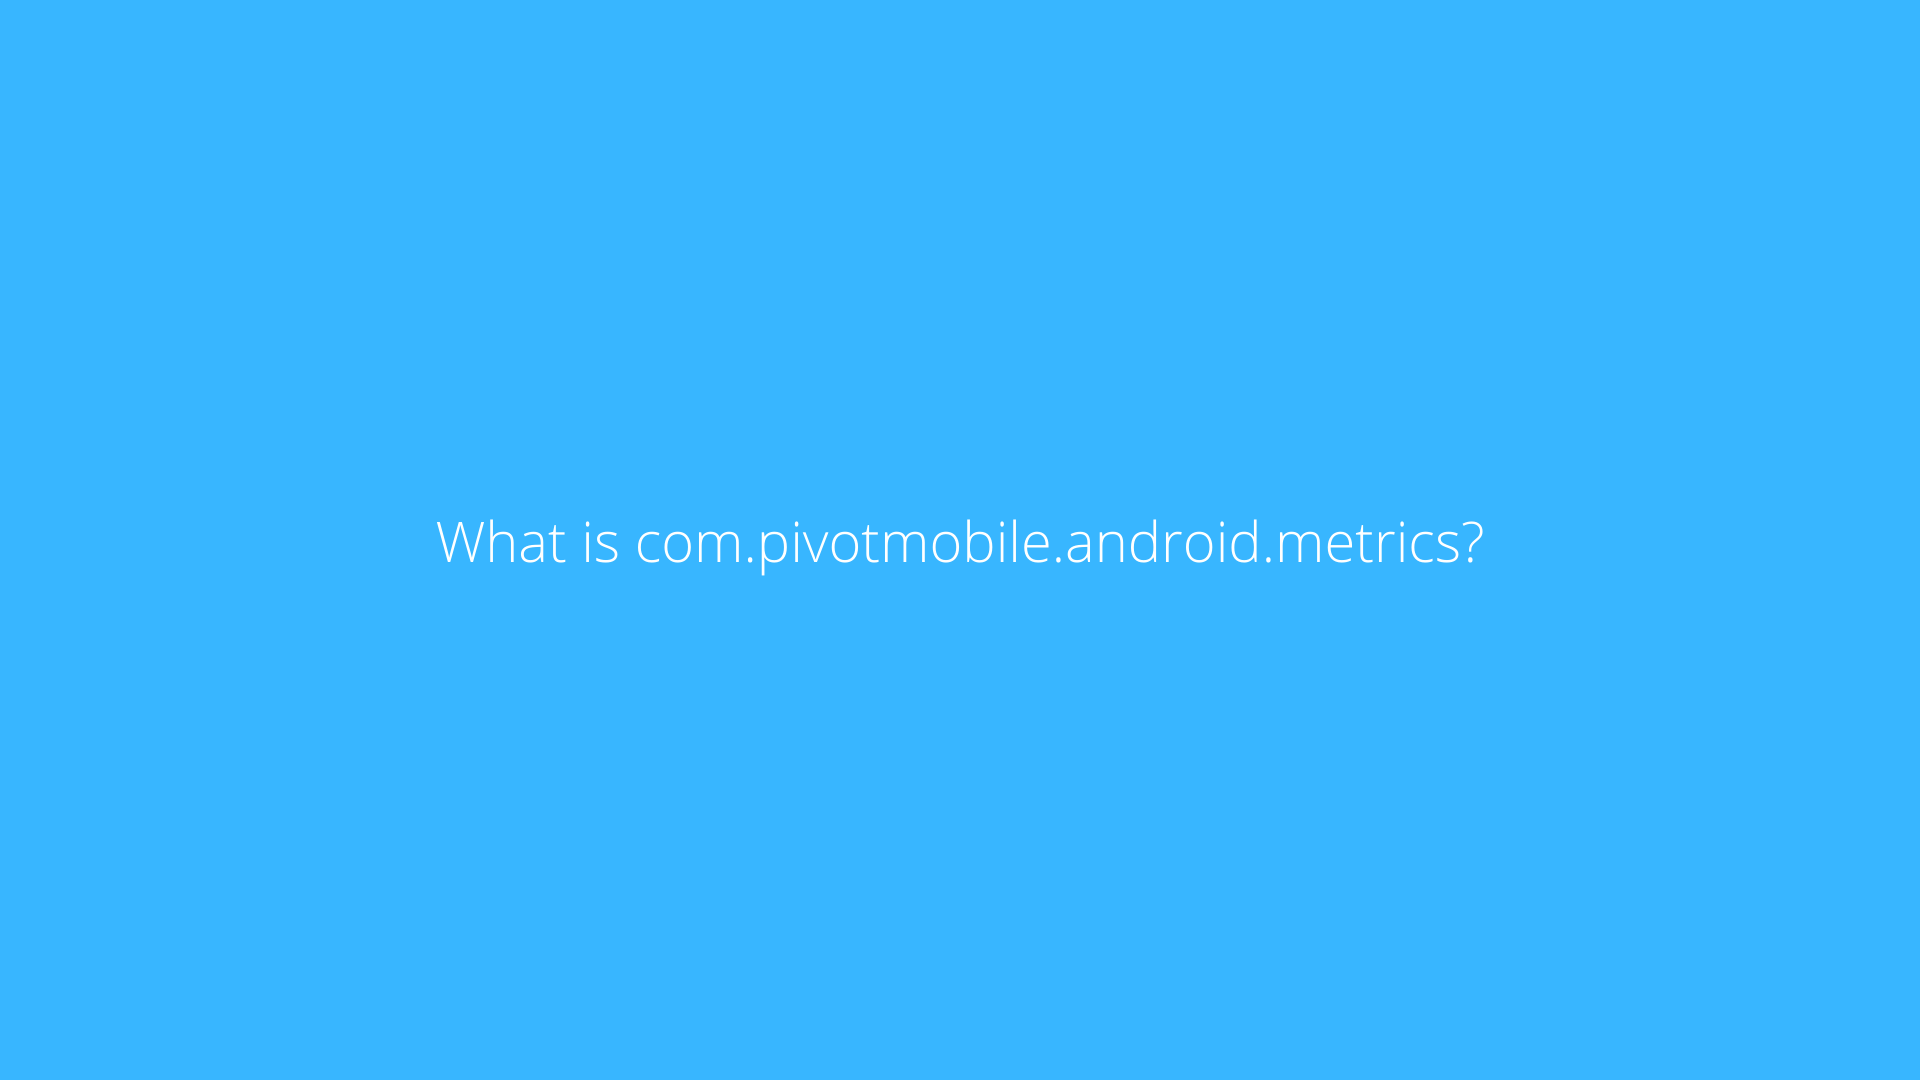 What is com.pivotmobile.android.metrics?